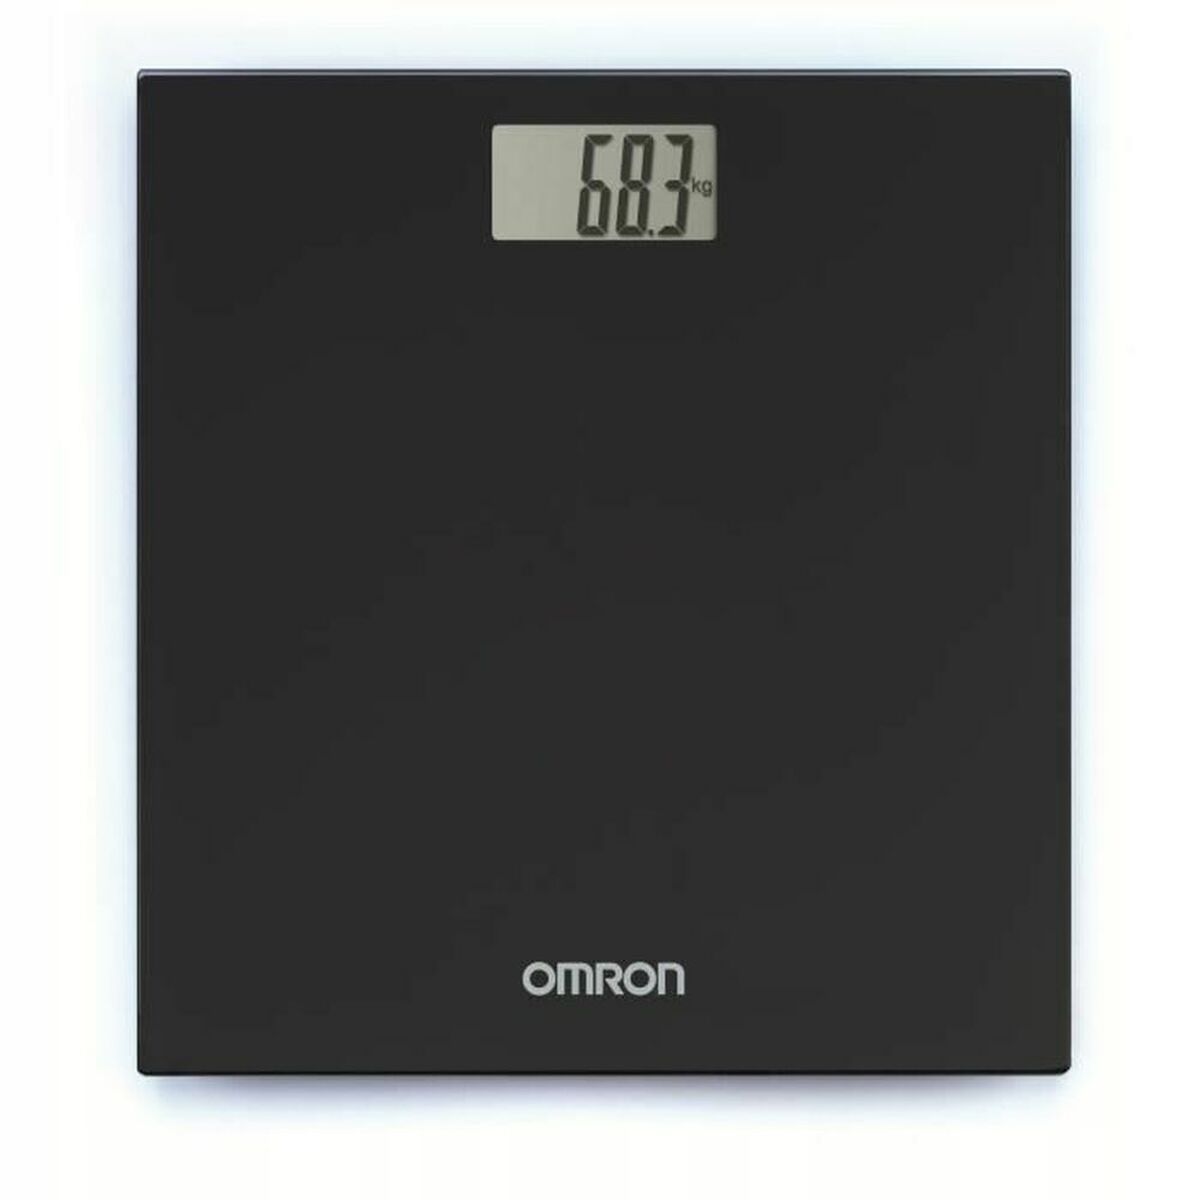 outlet waga łazienkowa elektroniczna omron hn289 max obciążenie 150 kg